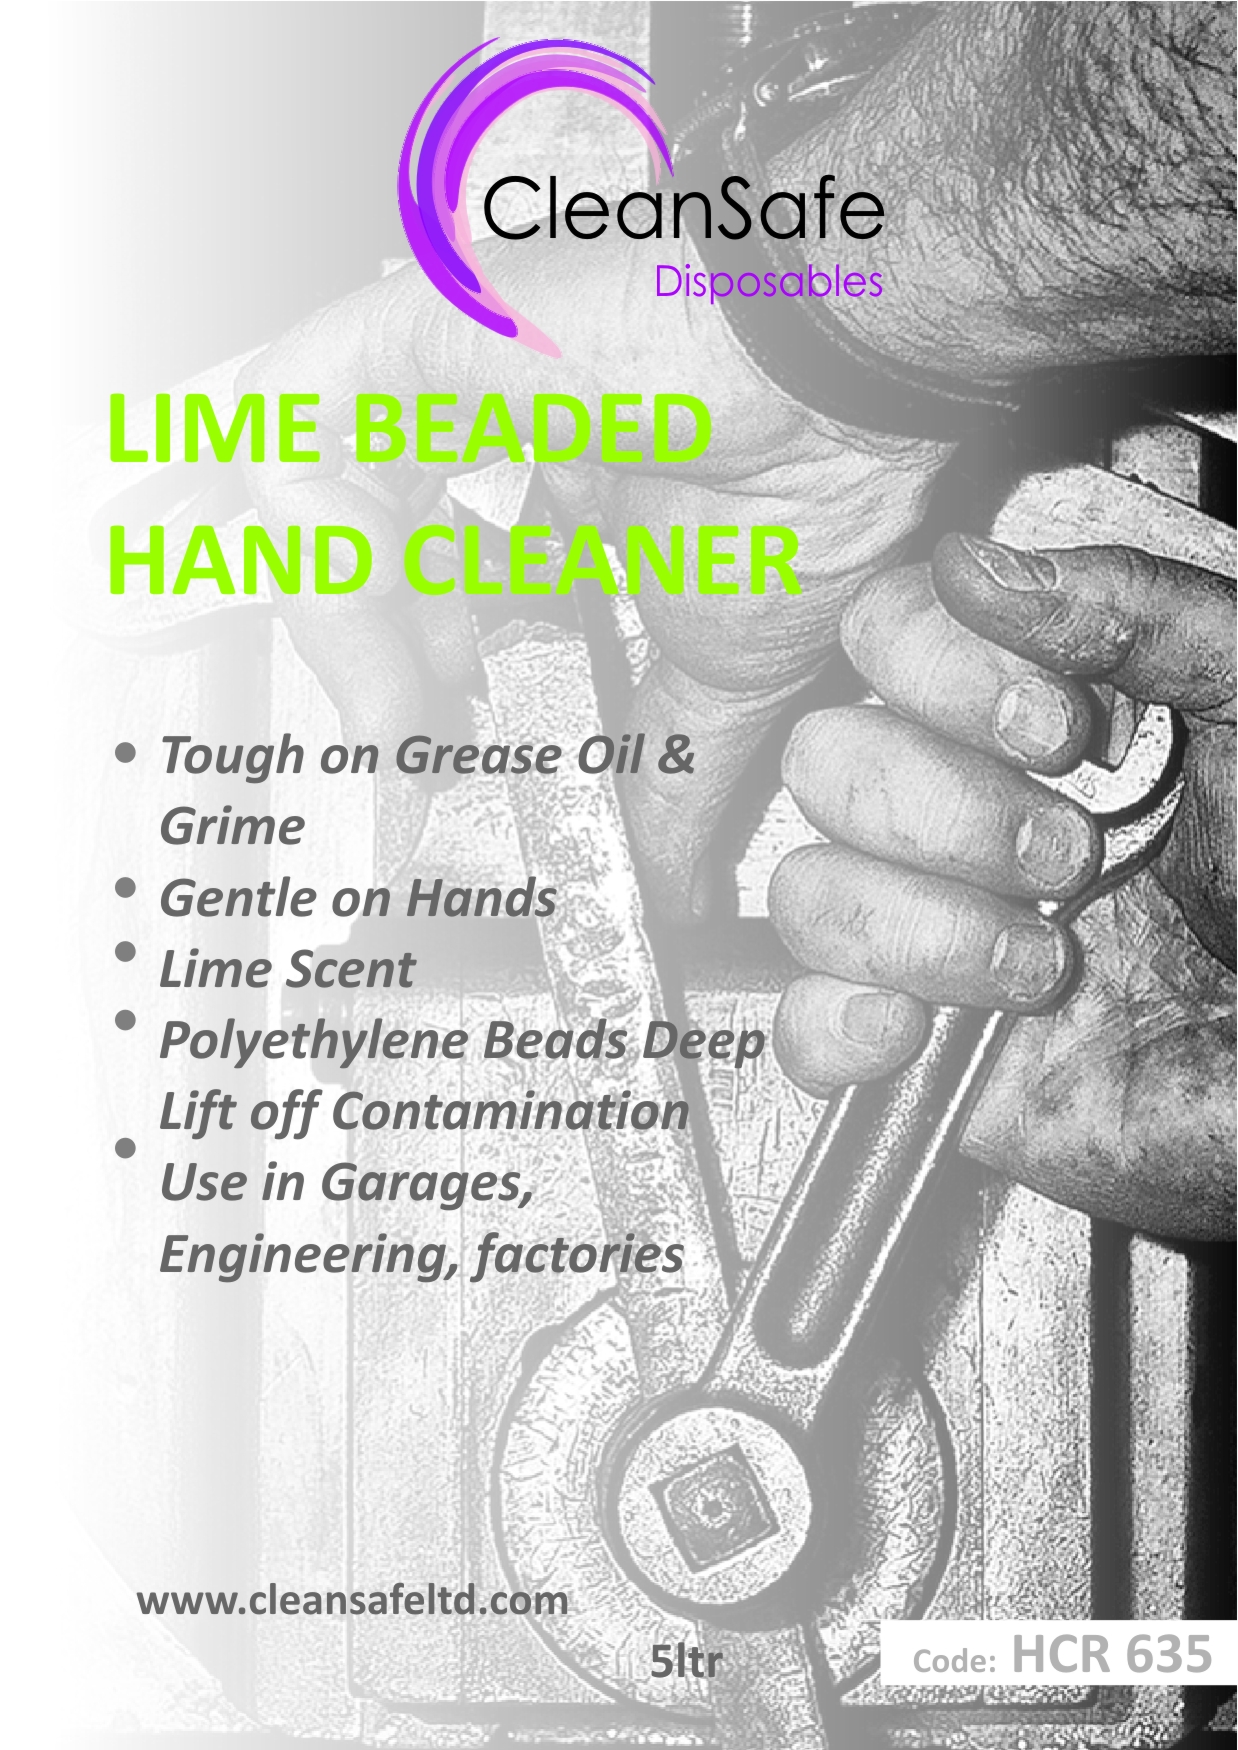 Lime Beaded Hand Cleaner (5ltr)